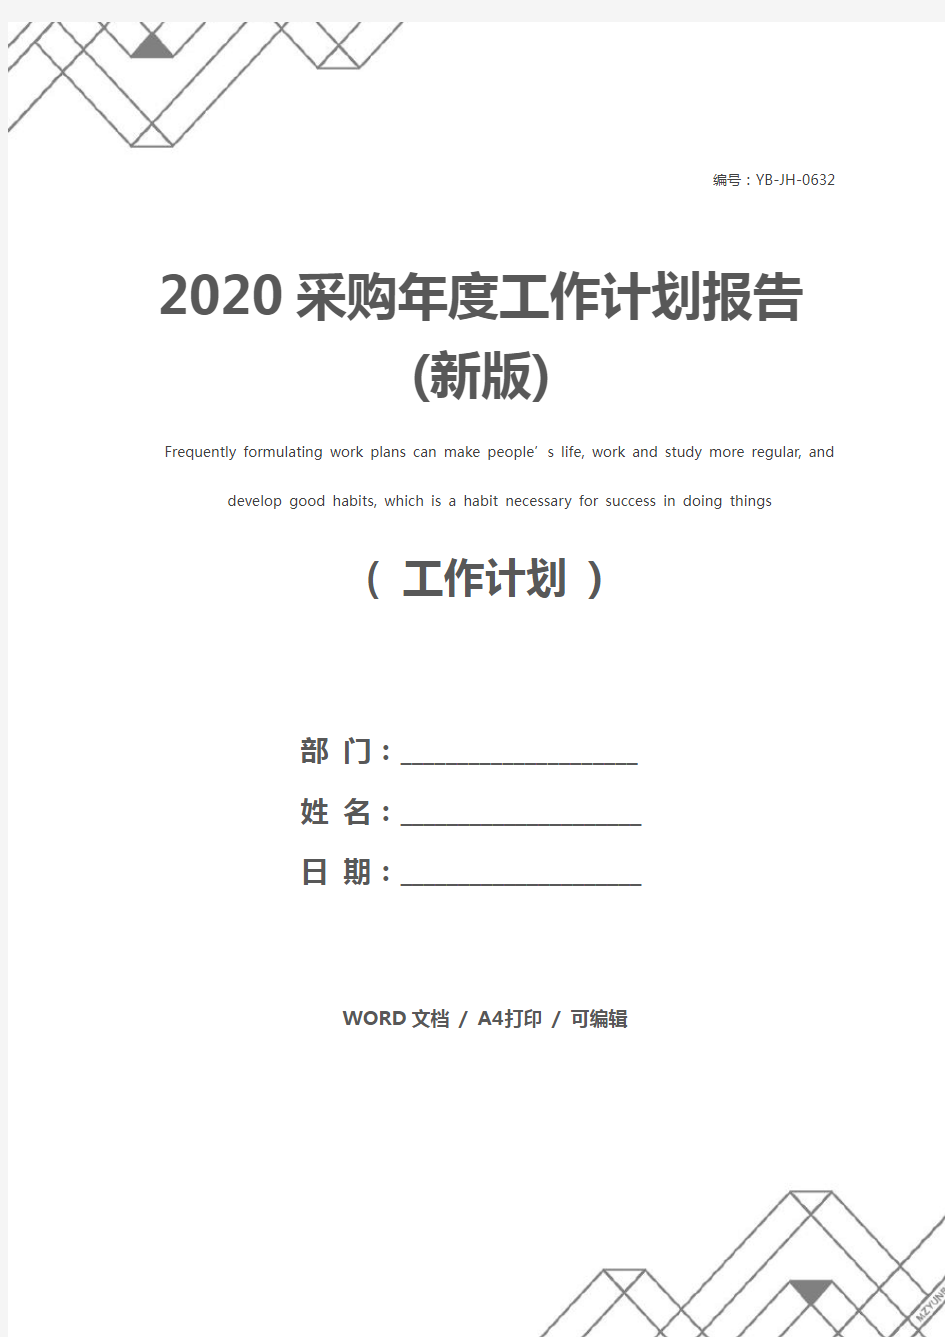 2020采购年度工作计划报告(新版)